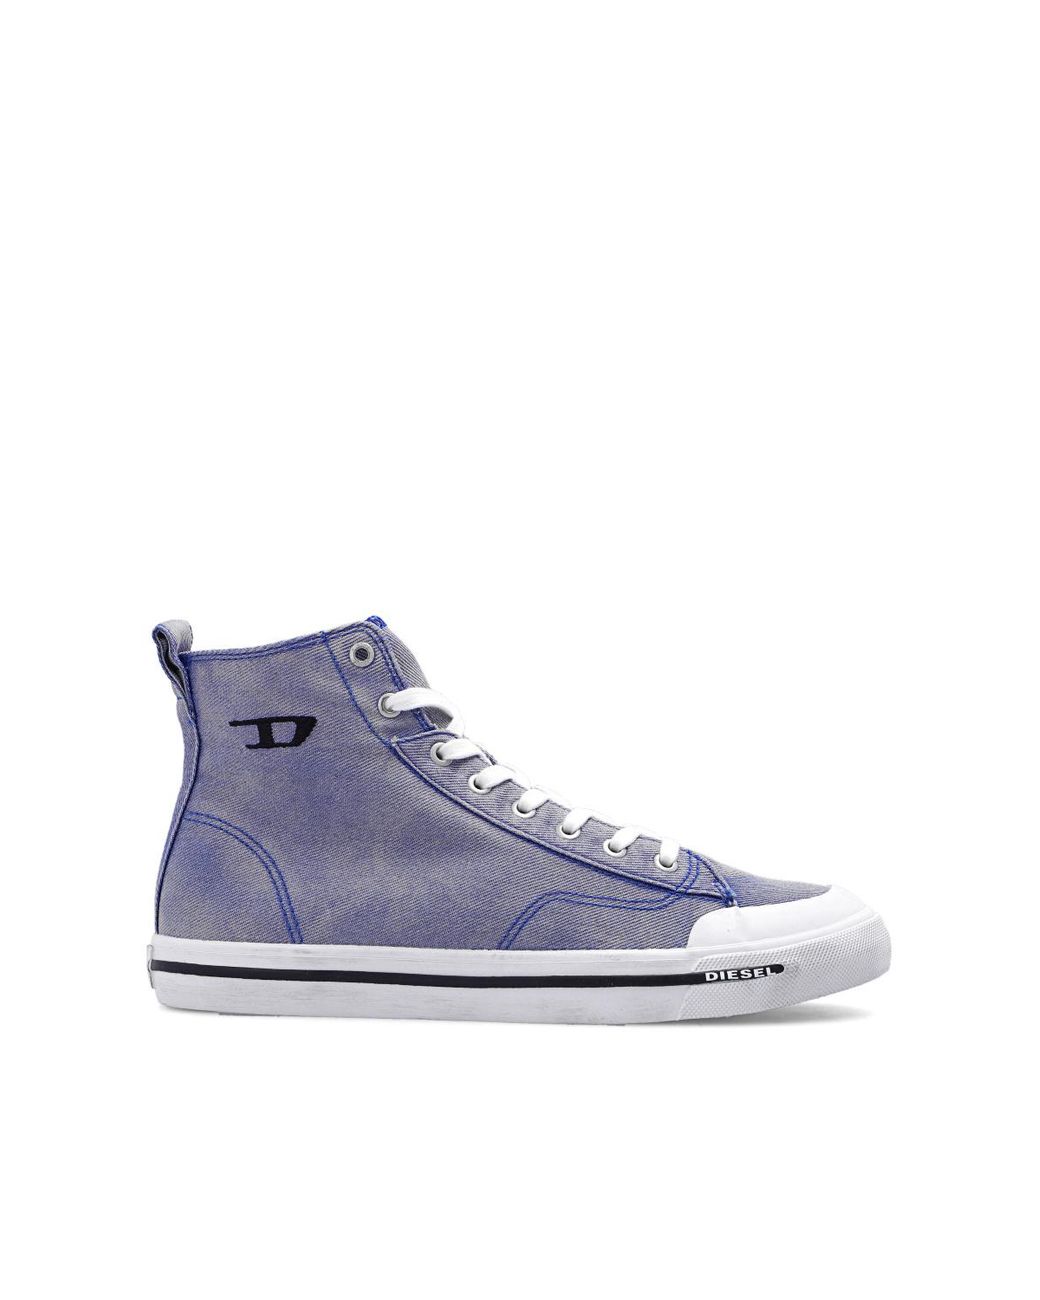 DIESEL Denim 's-athos' High-top Sneakers in Blue for Men | Lyst